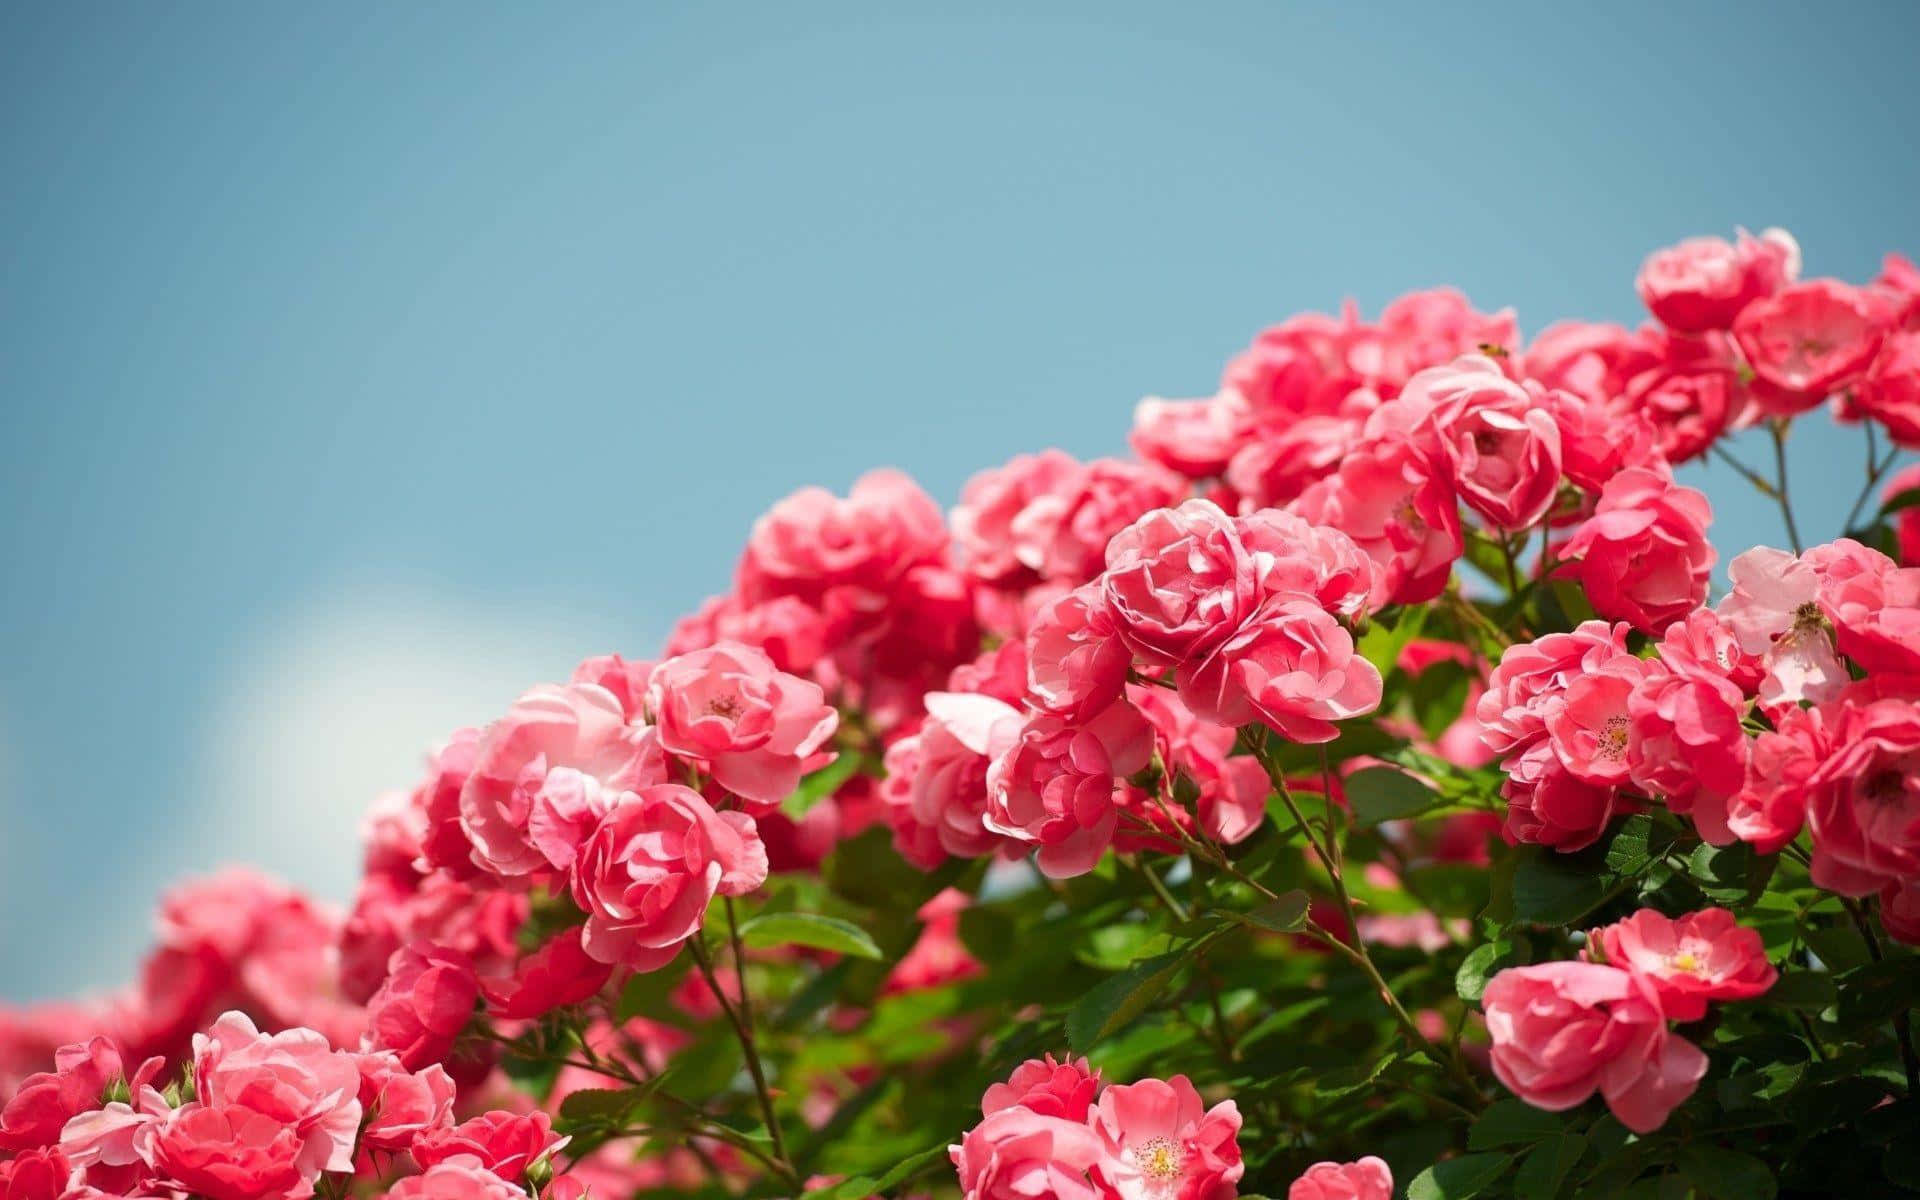 Hình ảnh hoa hồng vườn miễn phí là một trong những cách tuyệt vời để thư giãn và tận hưởng những khoảnh khắc yên bình. Với những hình ảnh vô cùng tuyệt đẹp này, bạn sẽ cảm nhận được sự mát mẻ và thanh tịnh trong không gian sống của mình. Hãy cùng khám phá những hình ảnh hoa hồng vườn miễn phí đẹp đến ngỡ ngàng này.